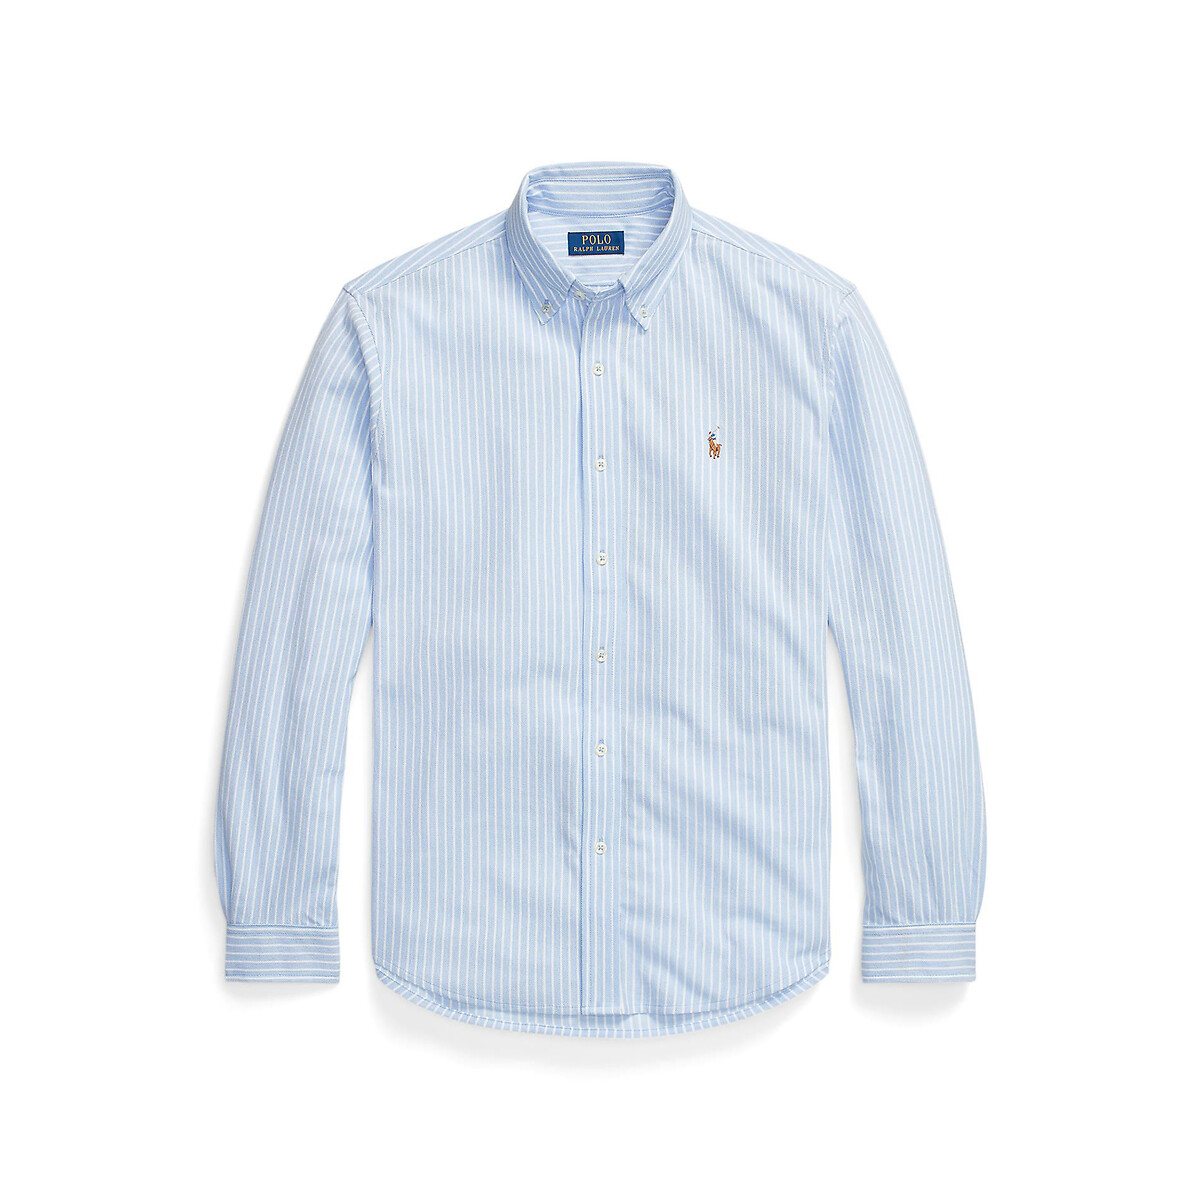 Рубашка из хлопковой ткани оксфорд и сетки  S синий LaRedoute, размер S